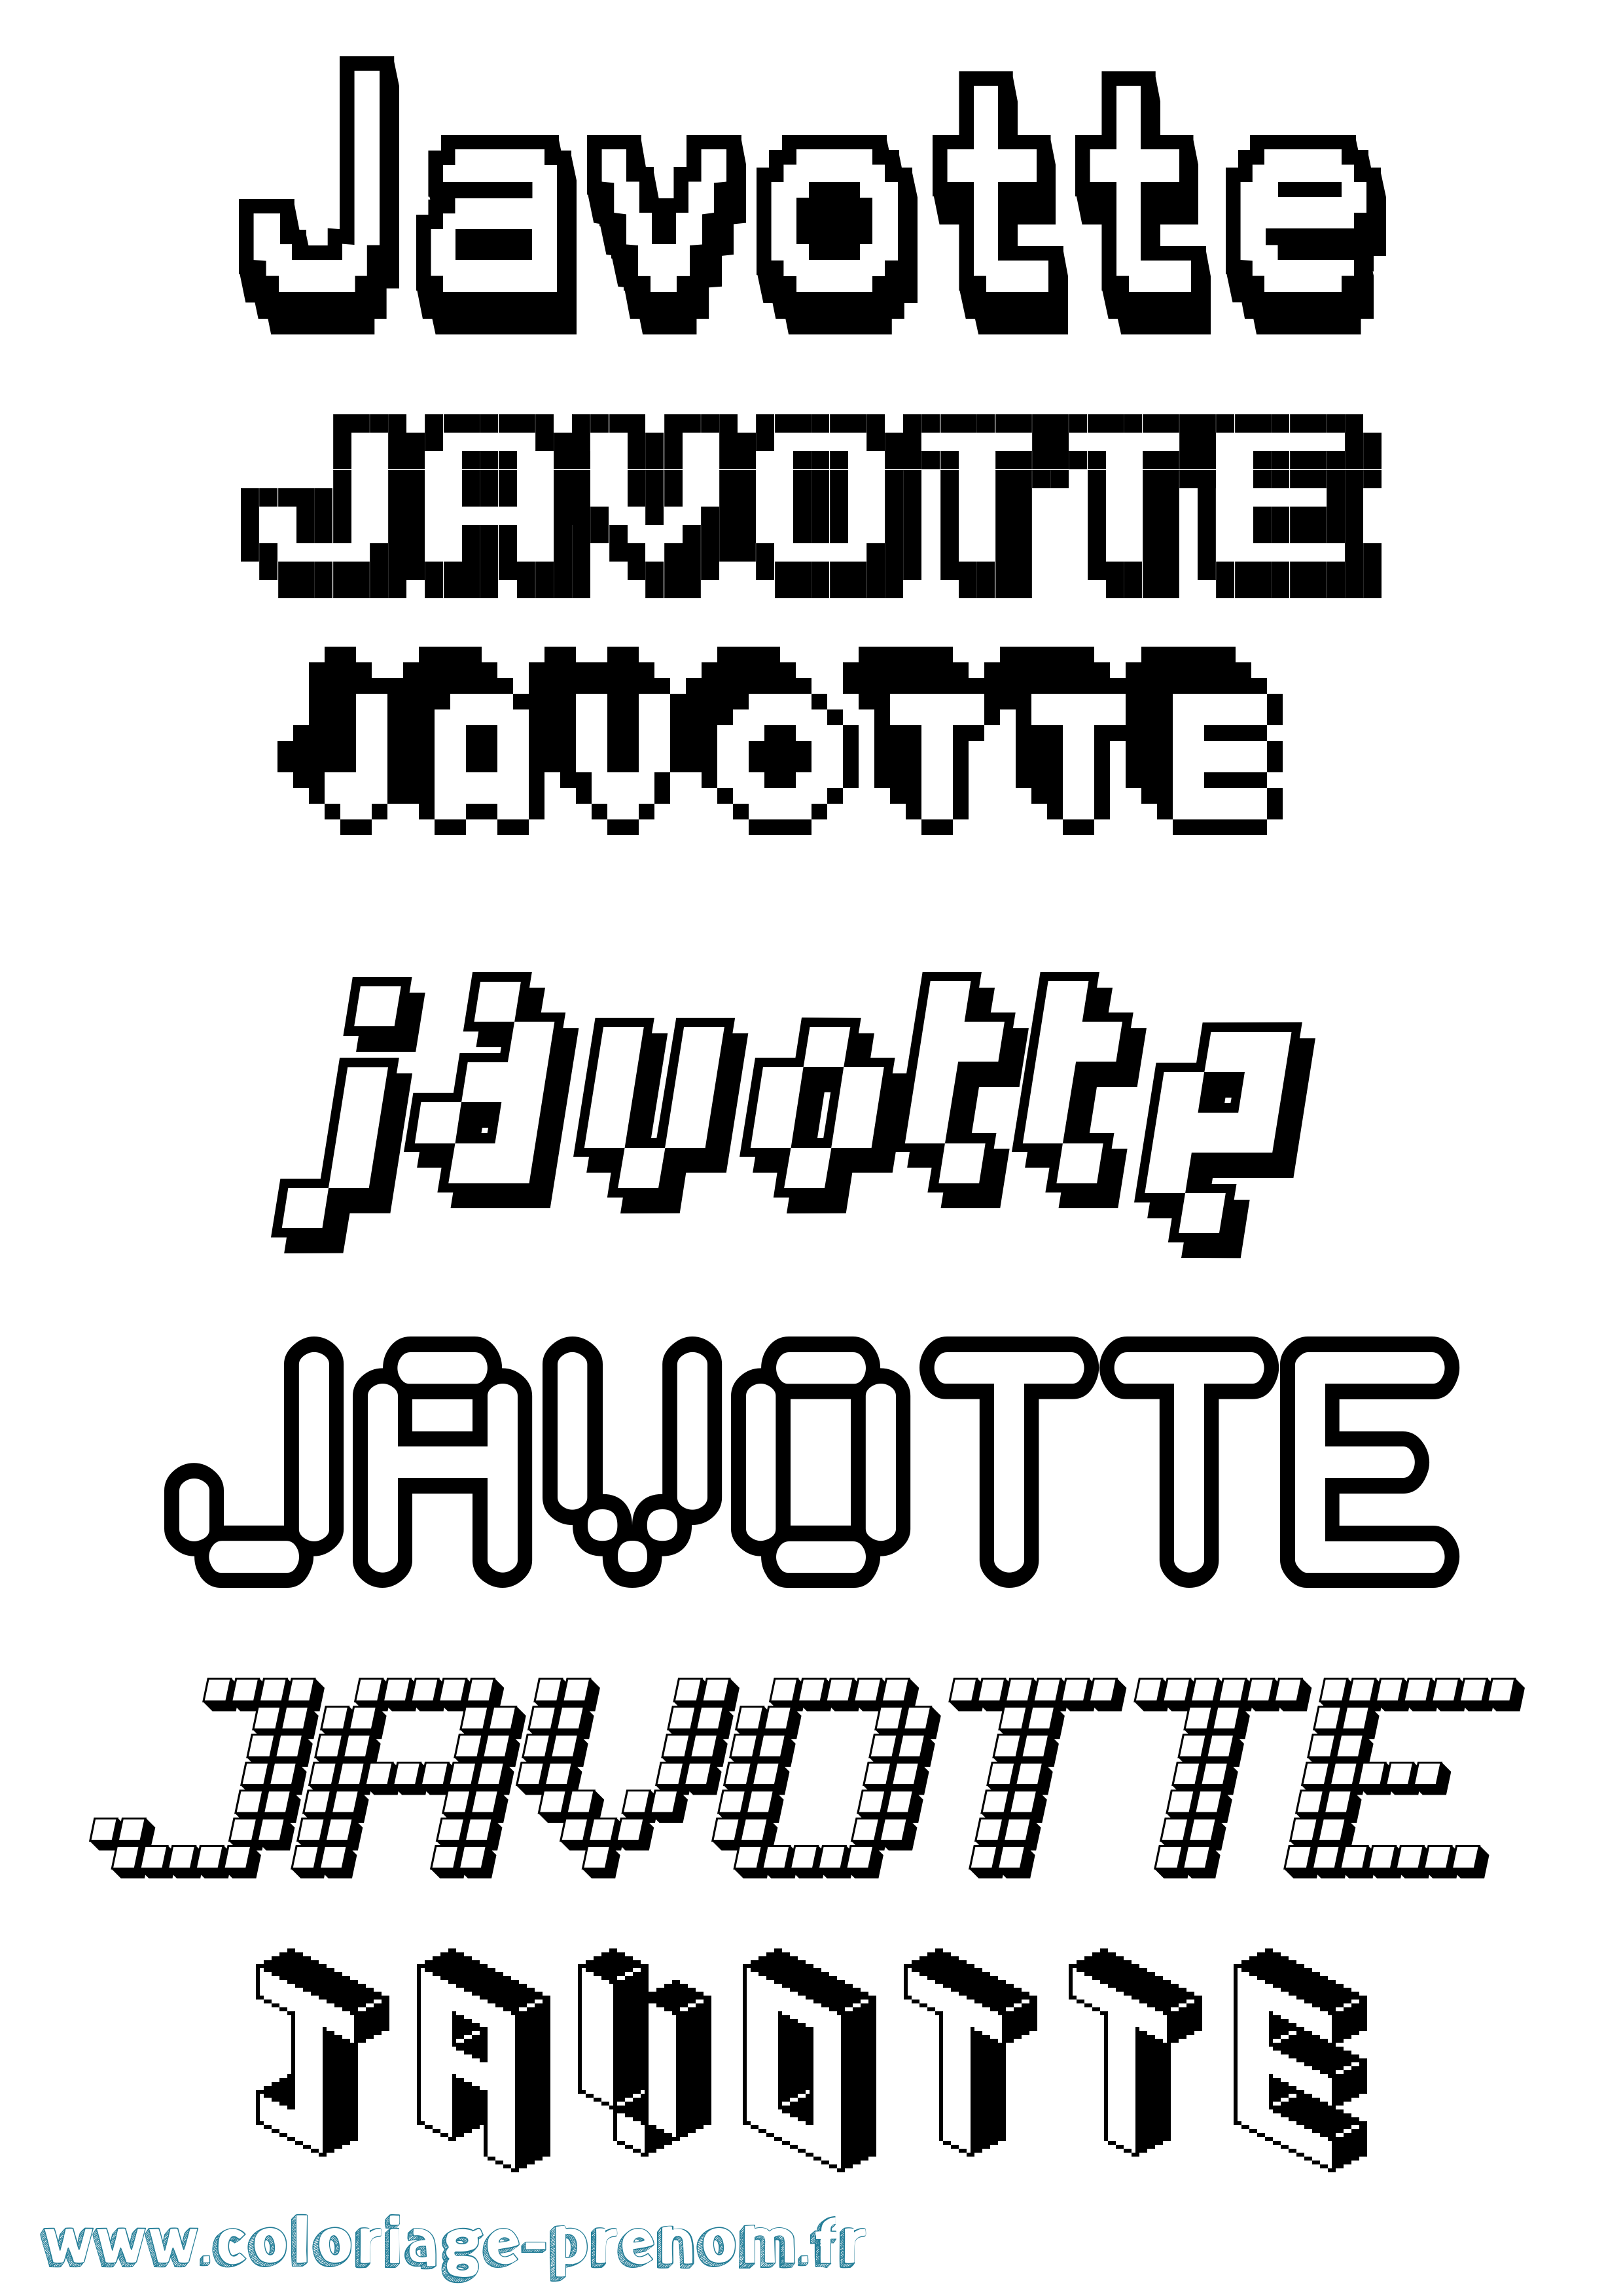 Coloriage prénom Javotte Pixel